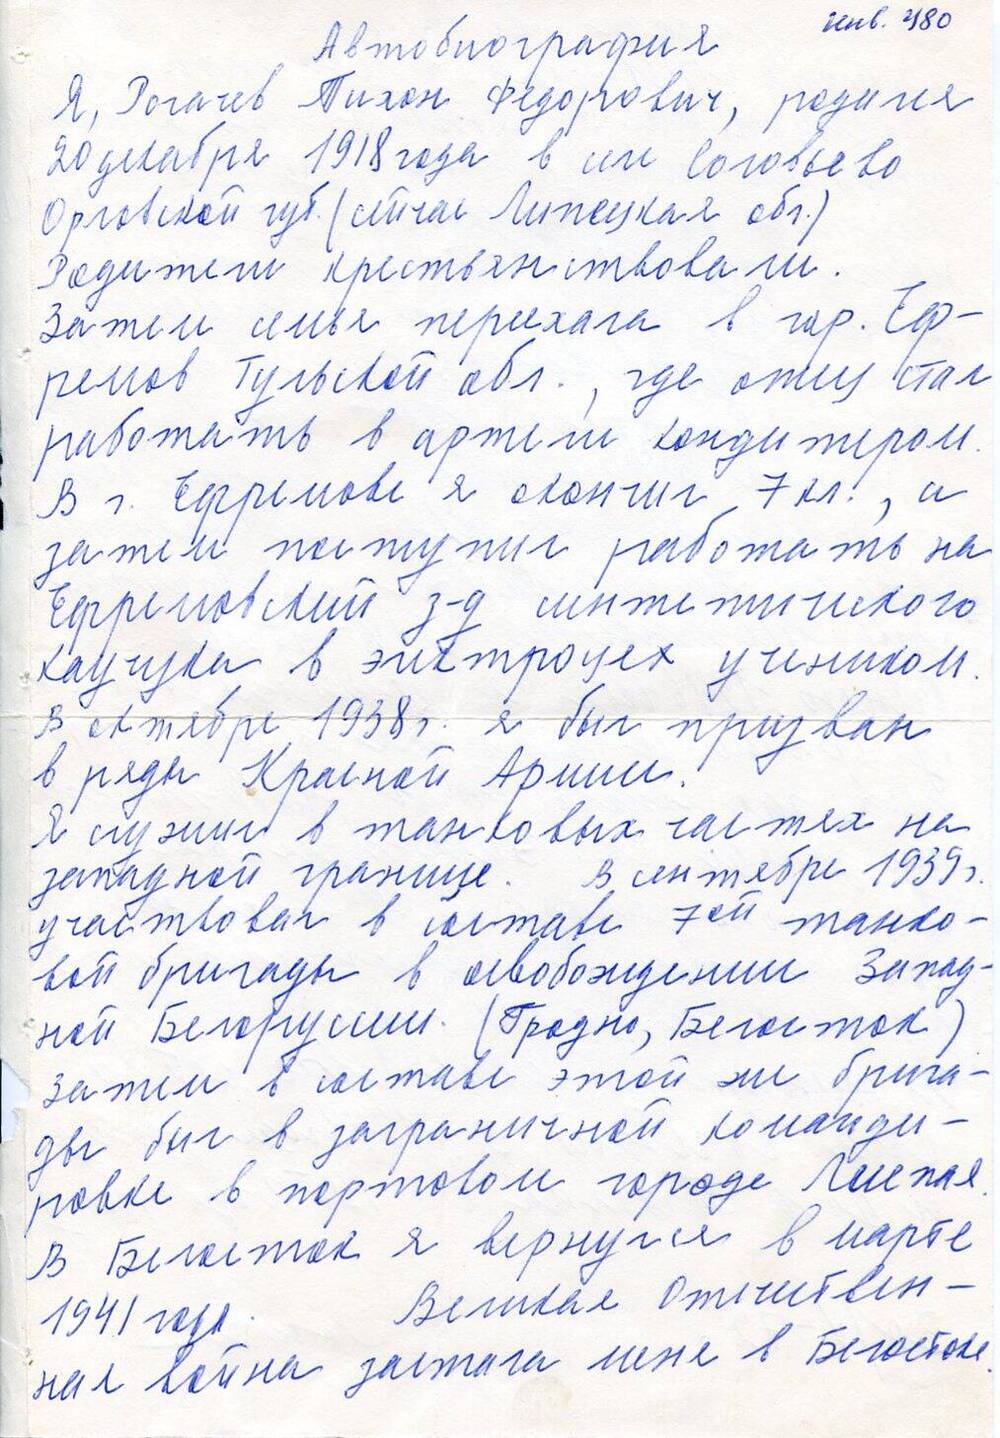 Автобиография краткая Рогачева Тихона Федоровича, бывшего узника концлагеря Бухенвальд, с 1918 г. по 1972 г.